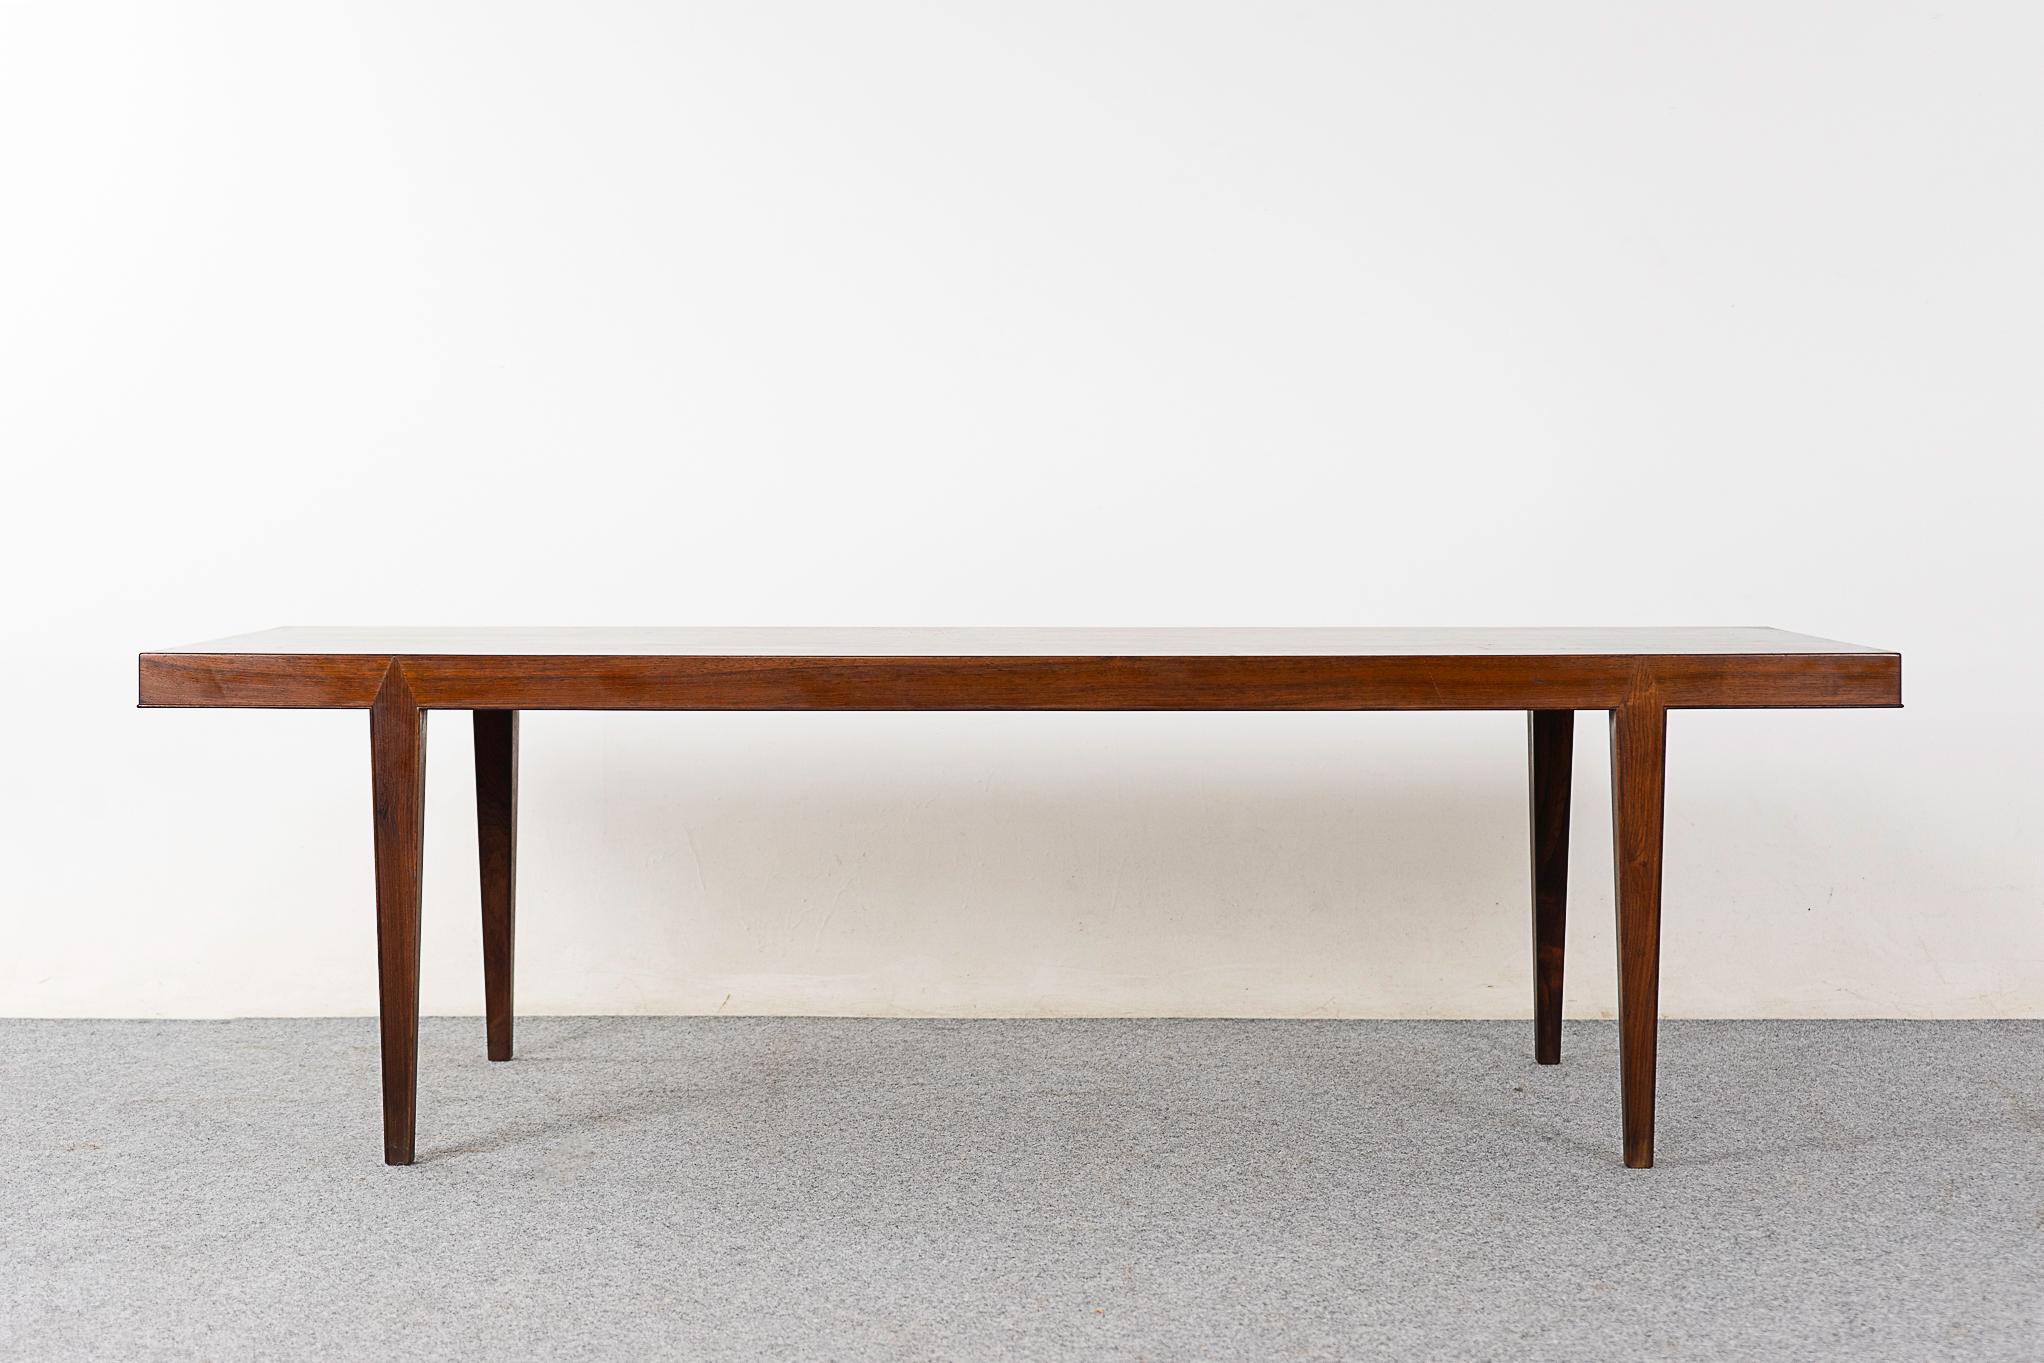 Table basse en bois de rose du milieu du siècle, conçue par Severin Hansen pour Hansen, vers les années 1960. Magnifique placage assorti au livre sur l'extrados, menuiserie d'angle géométrique élégante.

Veuillez vous renseigner sur les tarifs